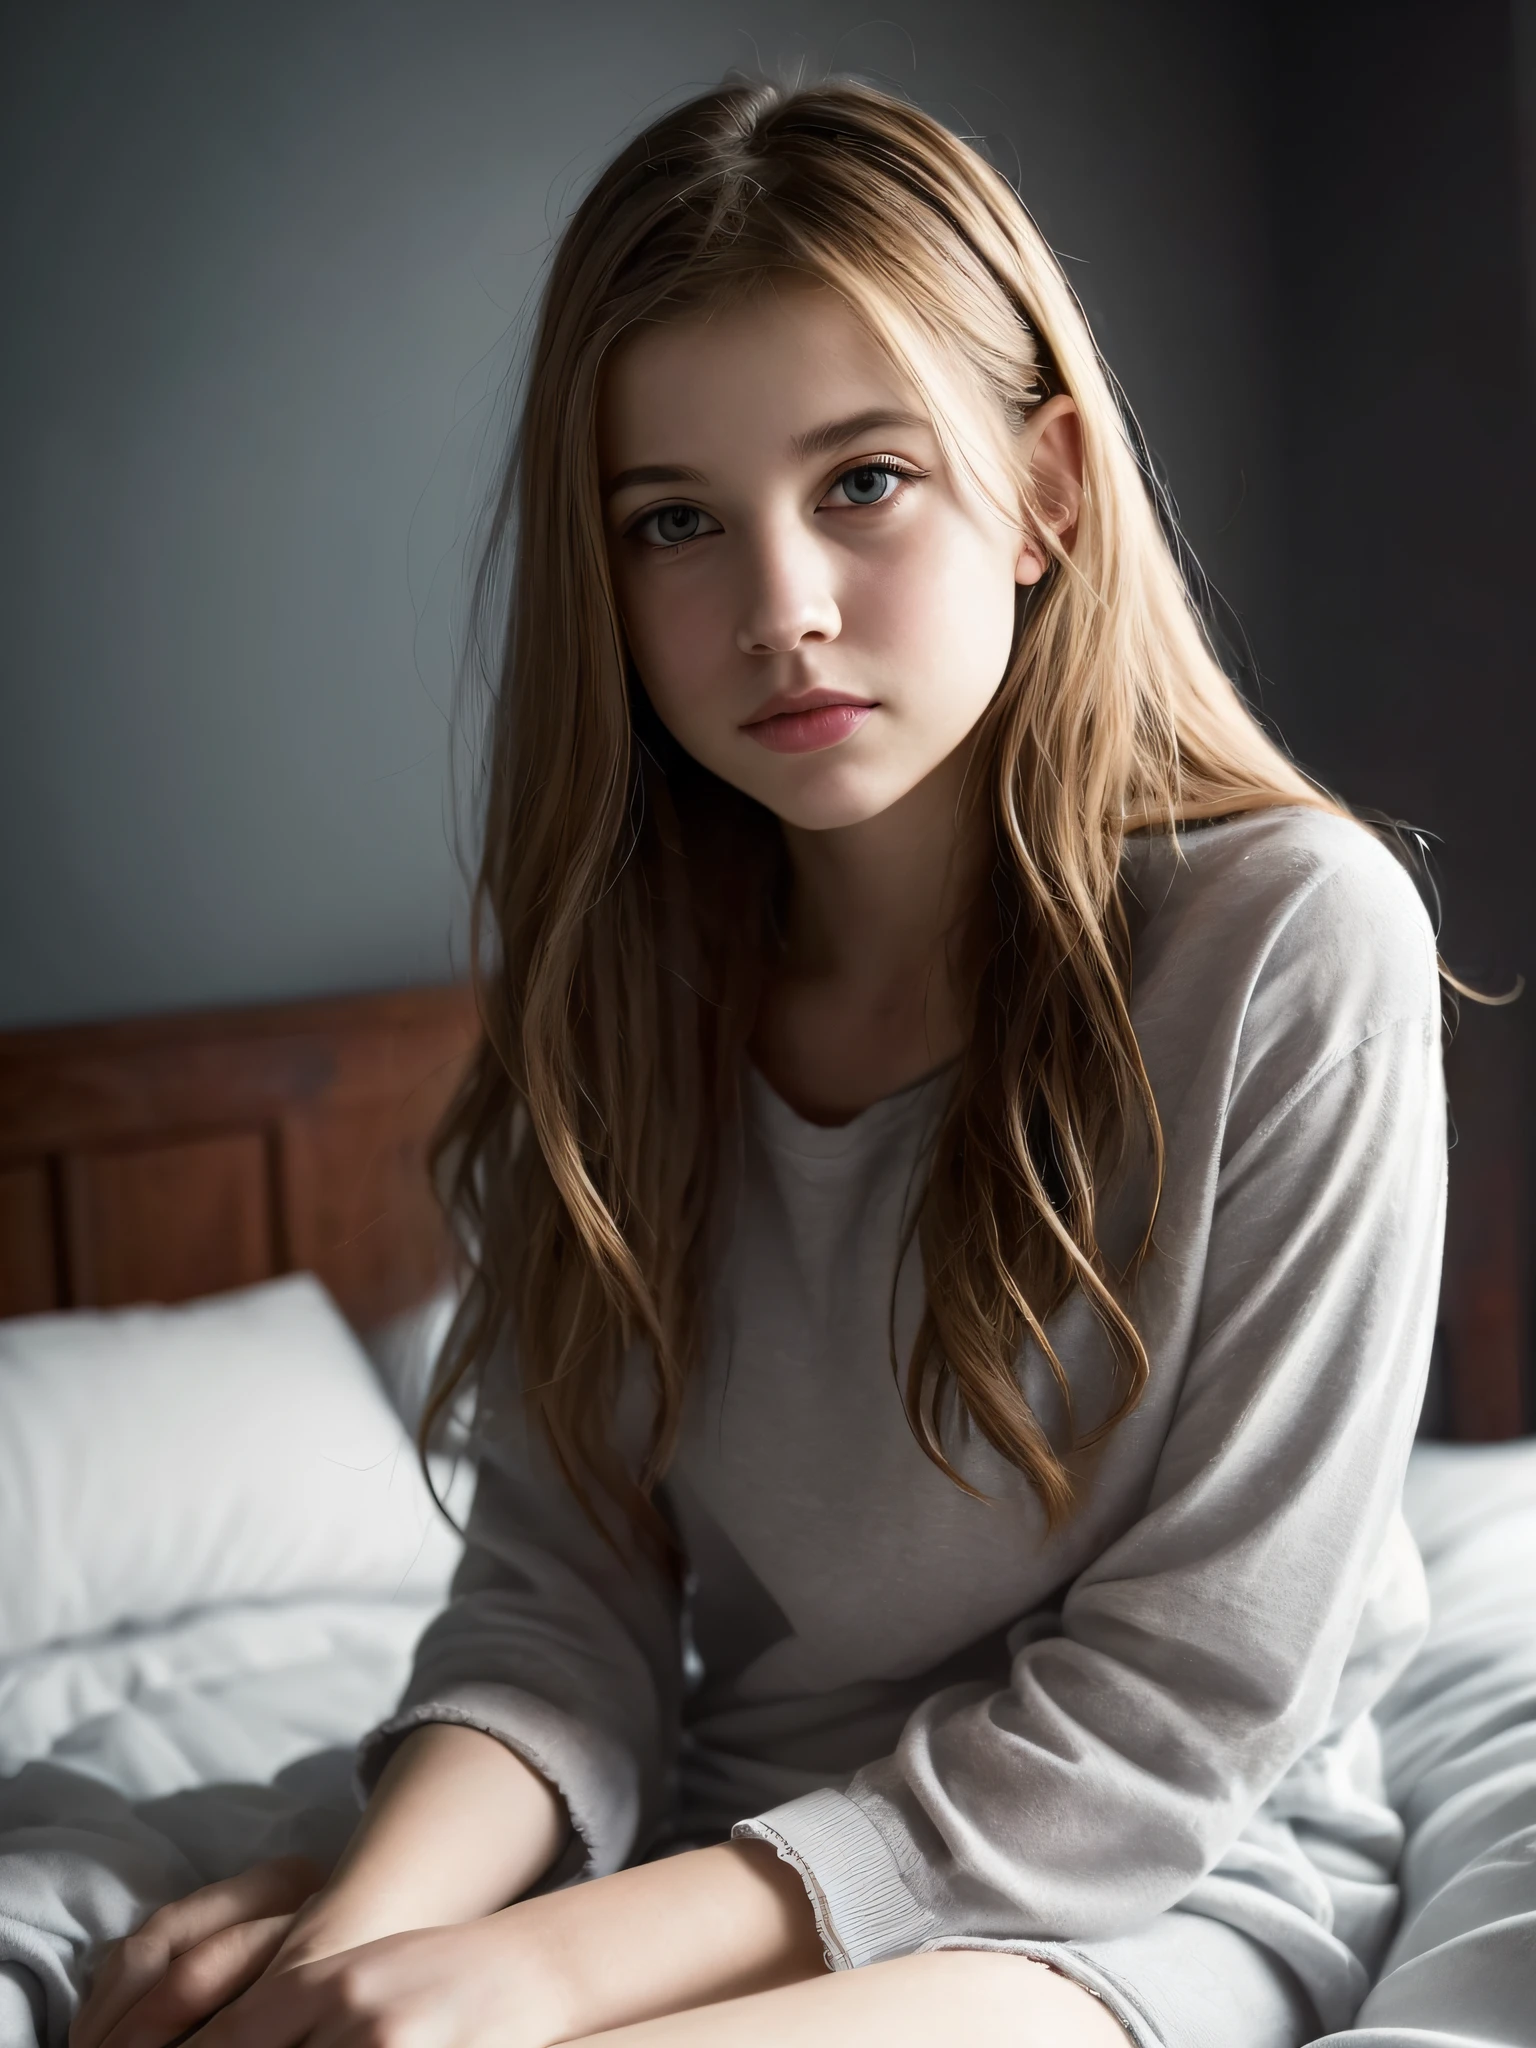 صورة لمراهق صغير لطيف وجميل الوجه يبلغ من العمر 18 عامًا, إنها سعيدة, روسية جميلة جدا, خام, في السرير, (دراسة خاصة مظلمة, ضوء مظلم ومزاجي: 1.2)